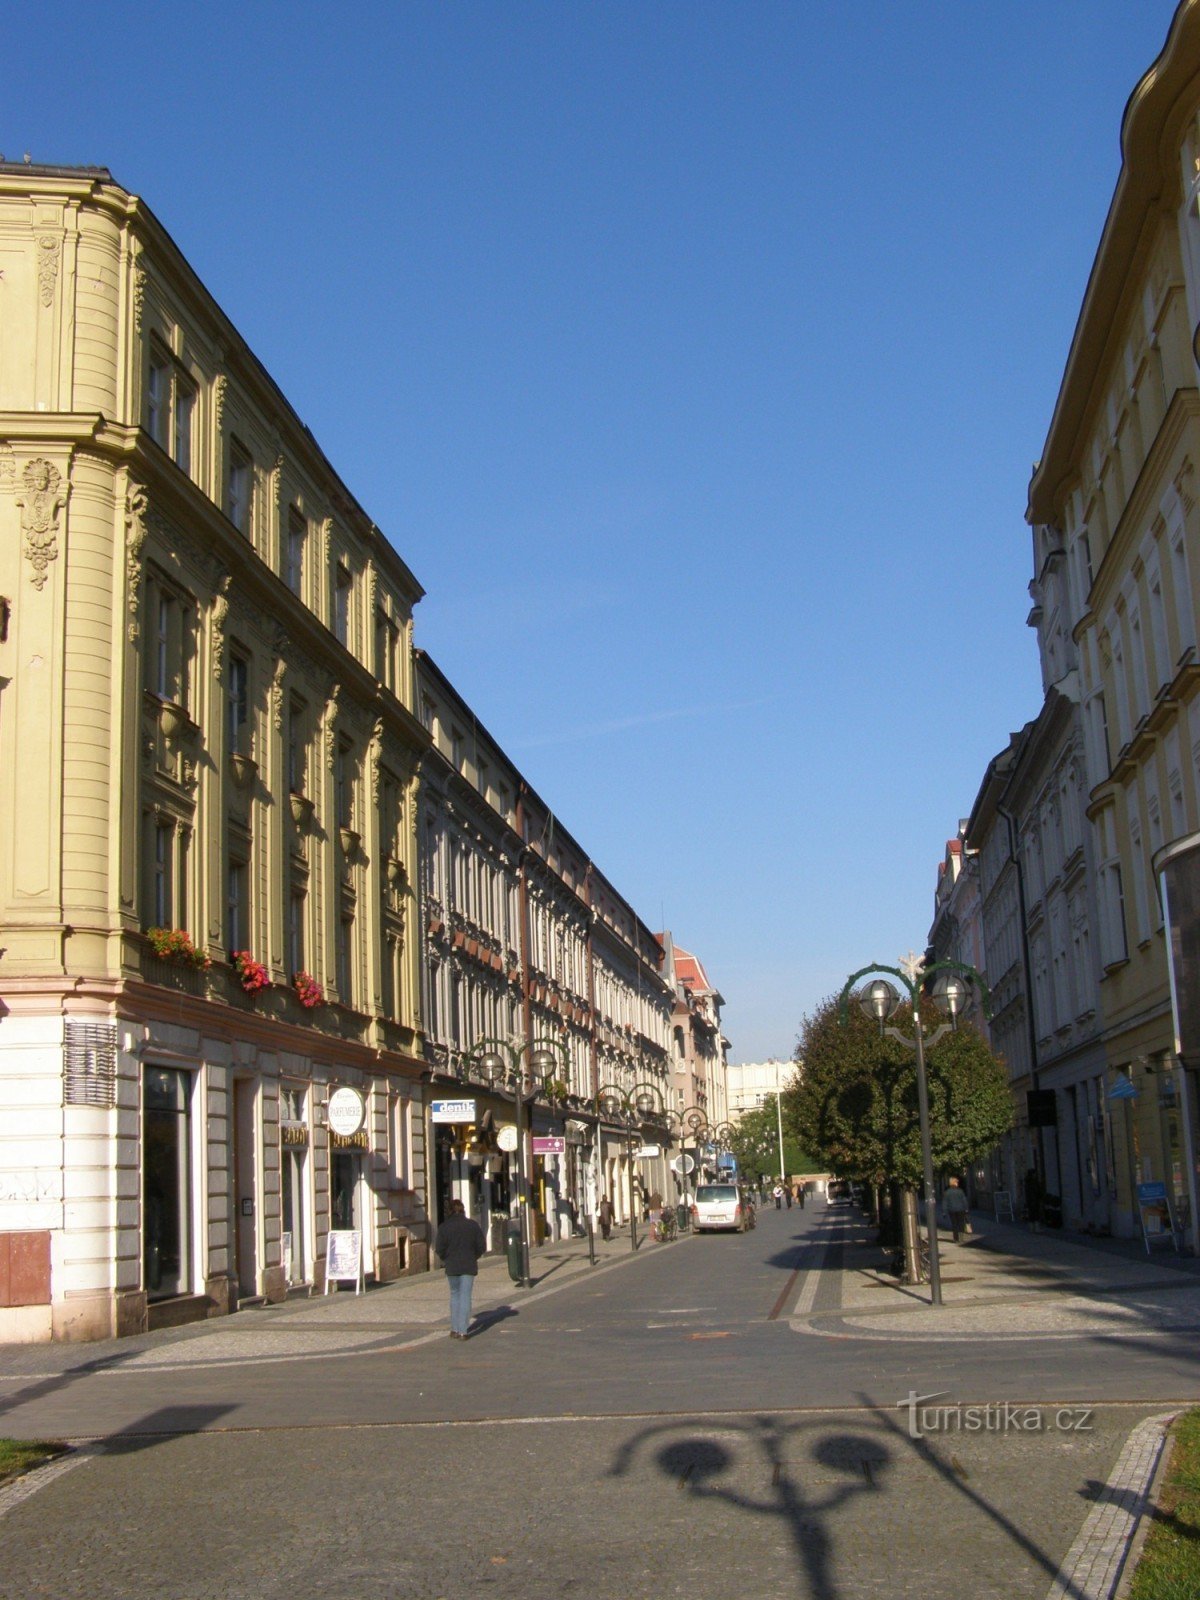 Hradec Králové - khu vực dành cho người đi bộ